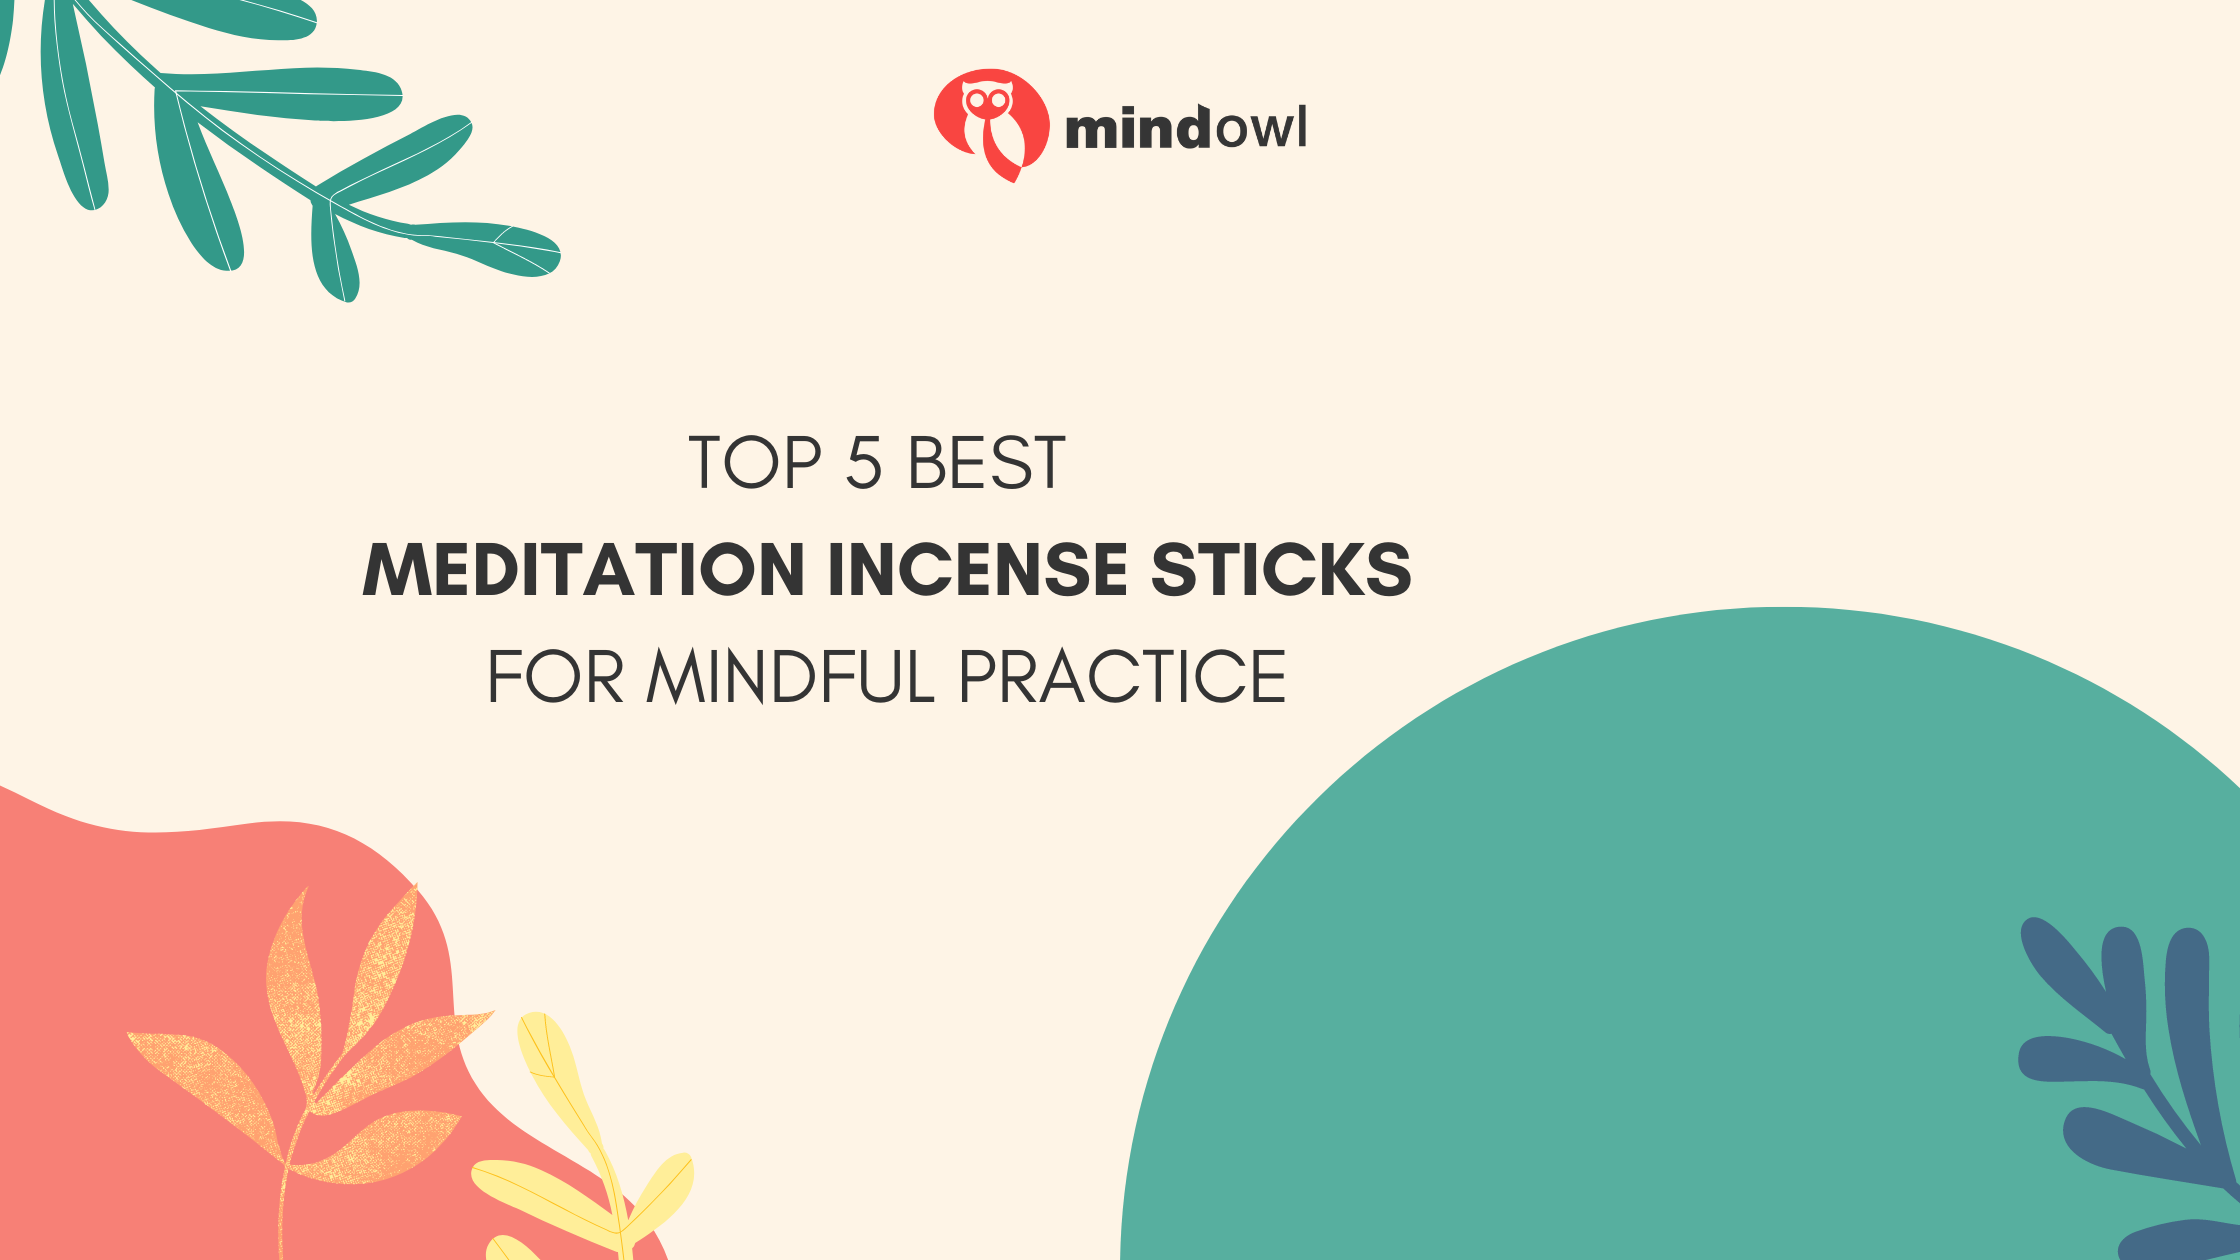 Top 5 Best Meditation Incense Sticks For Mindful Practice